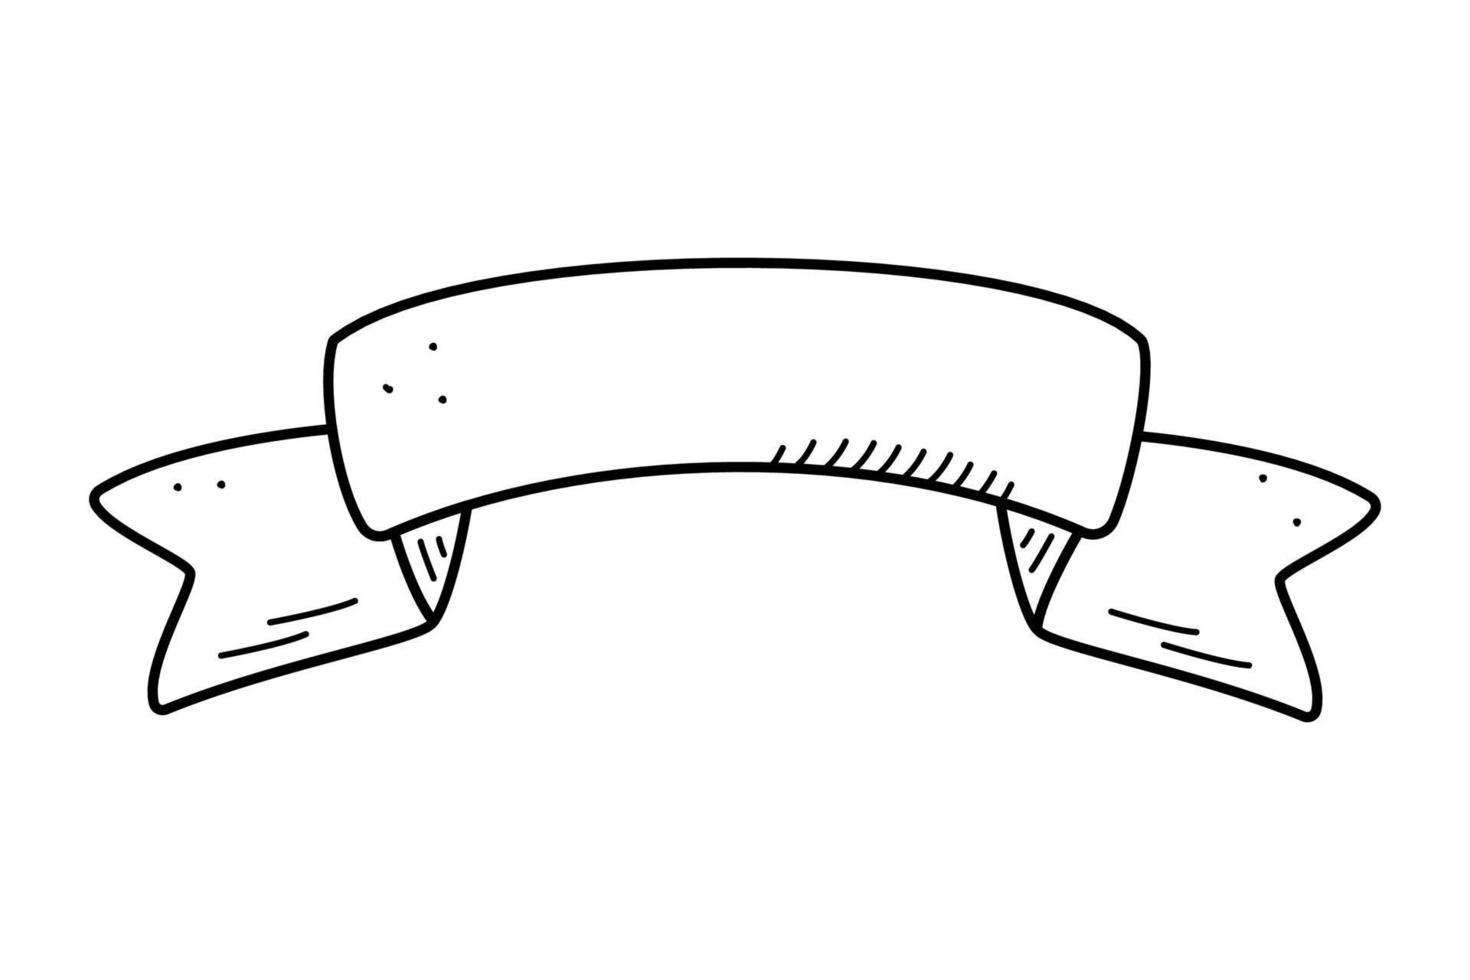 bannière de ruban pour les inscriptions, les salutations, l'illustration vectorielle de doodle. vecteur